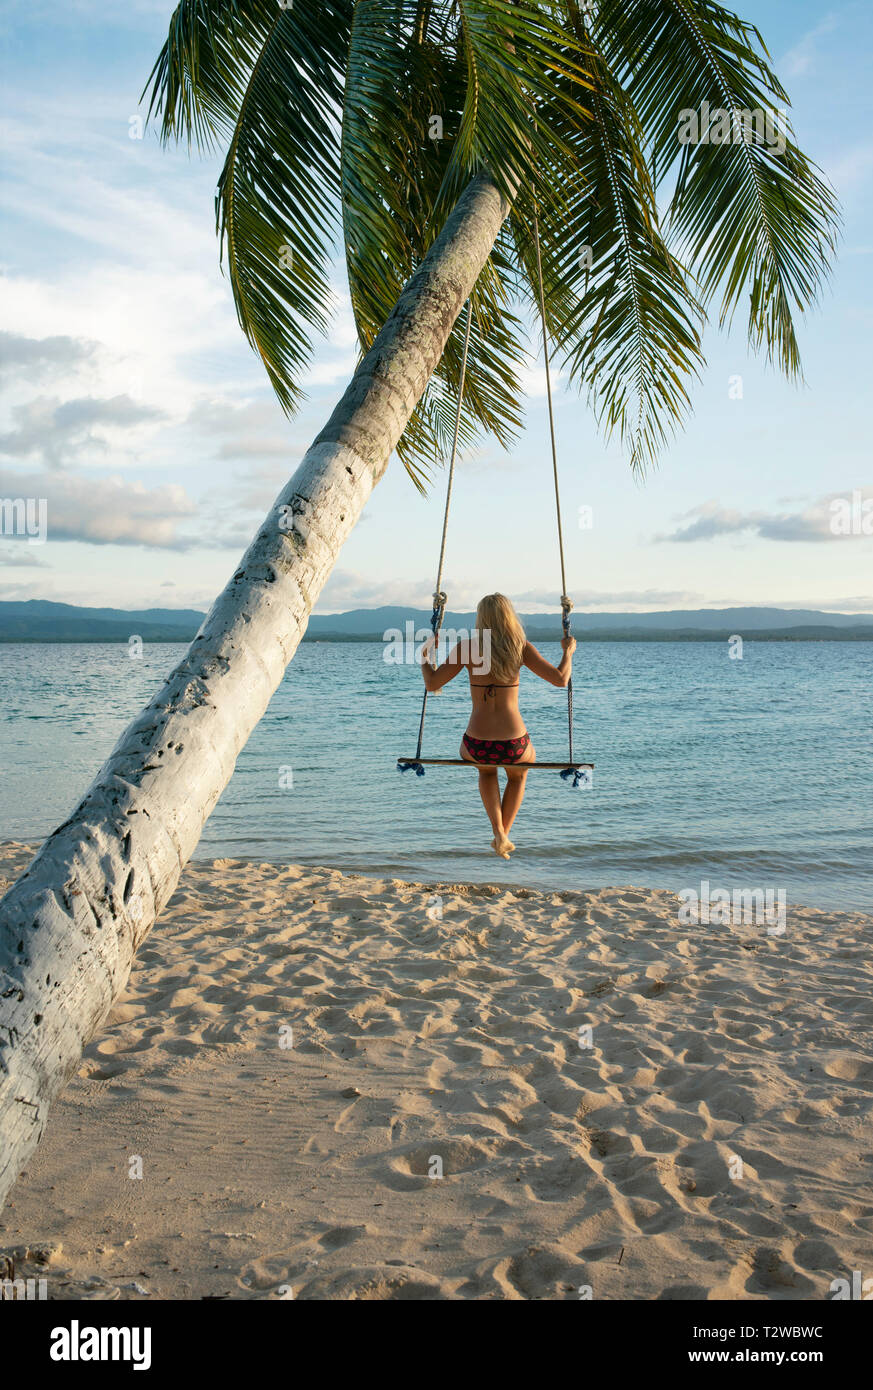 Vue arrière de la femme dans une plage swing attaché à un palmier dans les îles San Blas. Destination de voyage, de vie / Maison de concept. Panama, Oct 2018 Banque D'Images